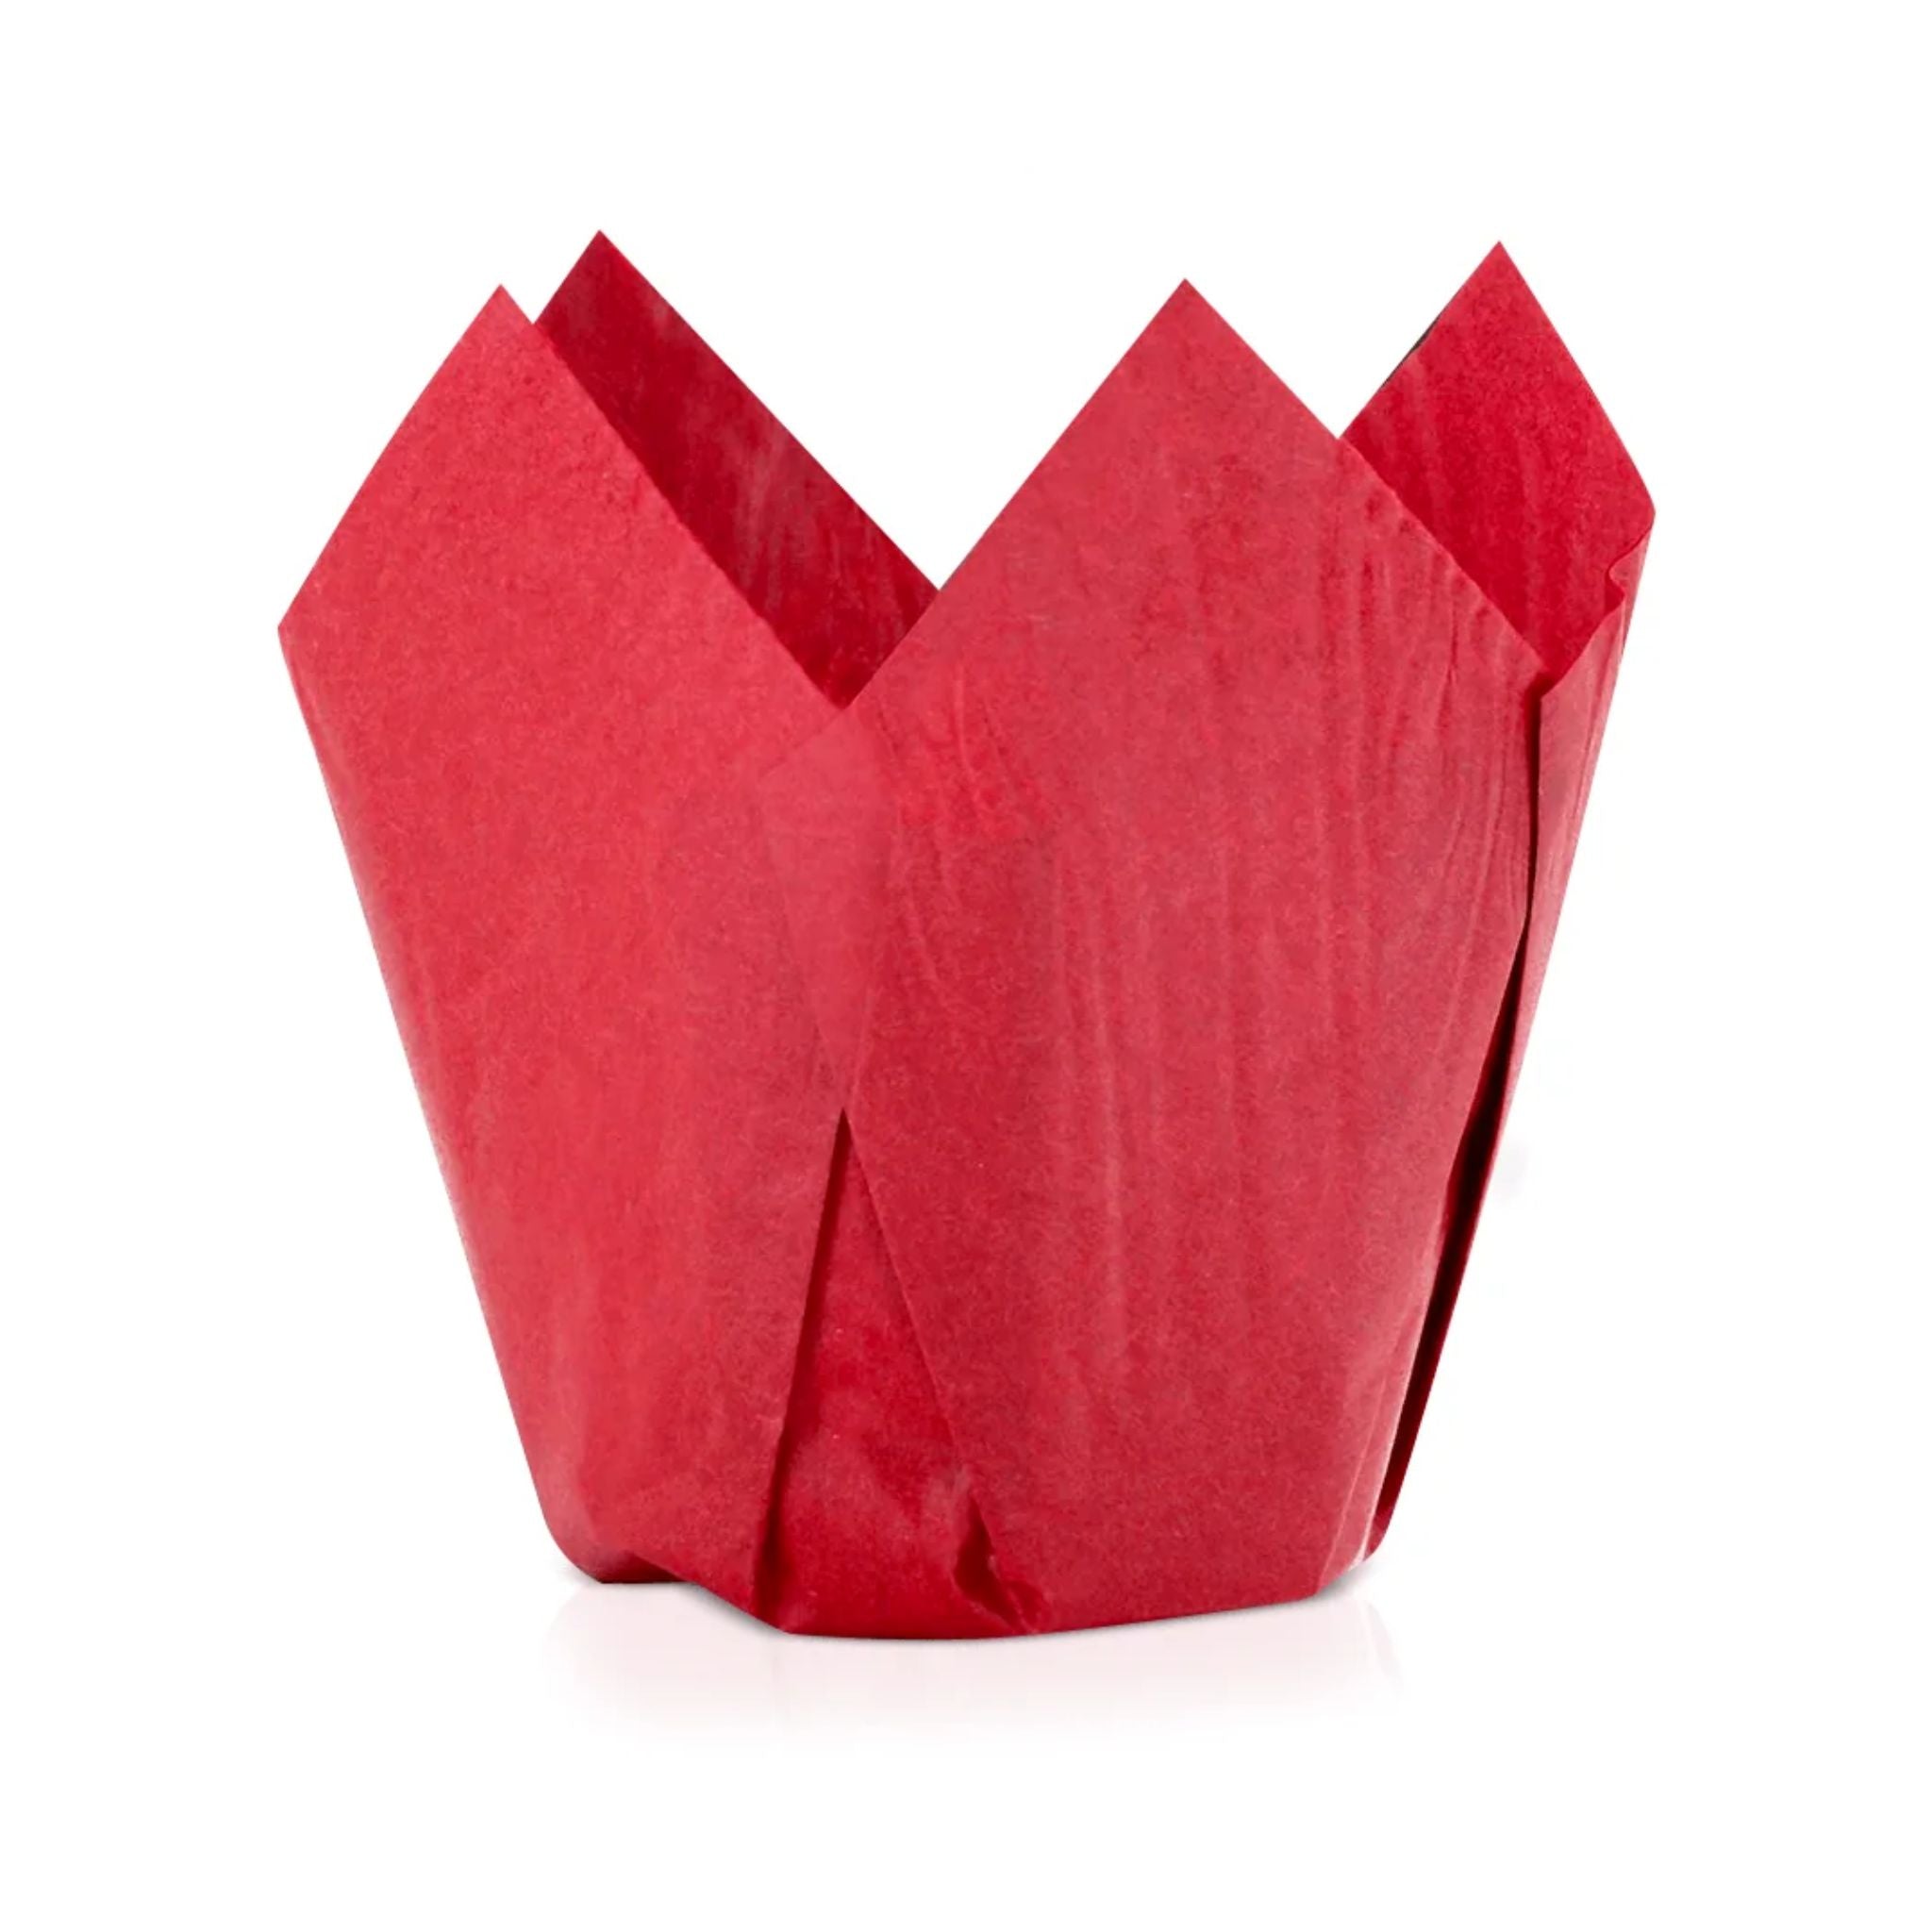 Capacillo Tulipan Rojo, Paq. 60 Piezas